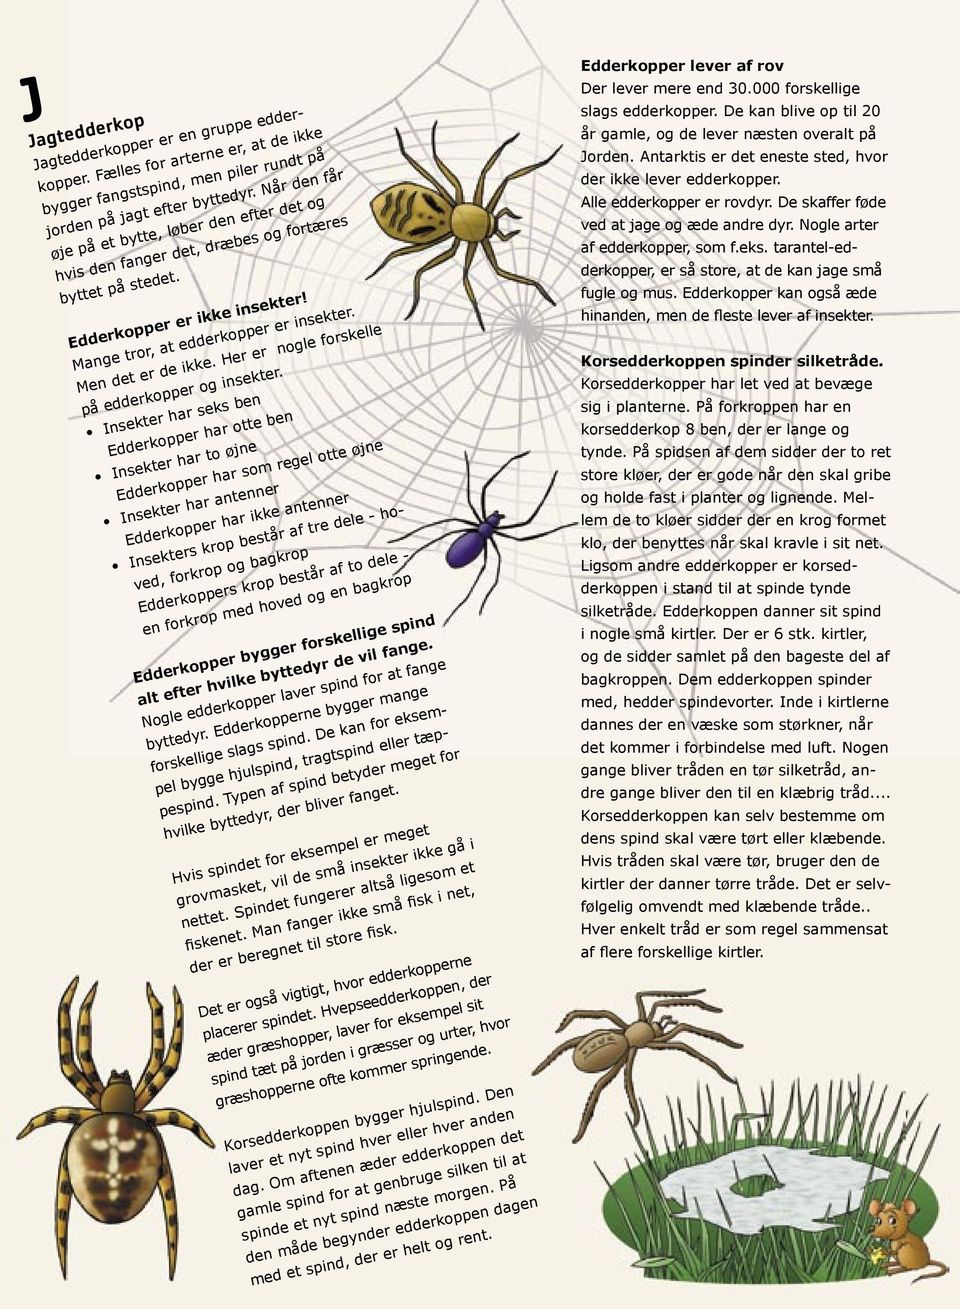 Her er nogle forskelle på edderkopper og insekter.